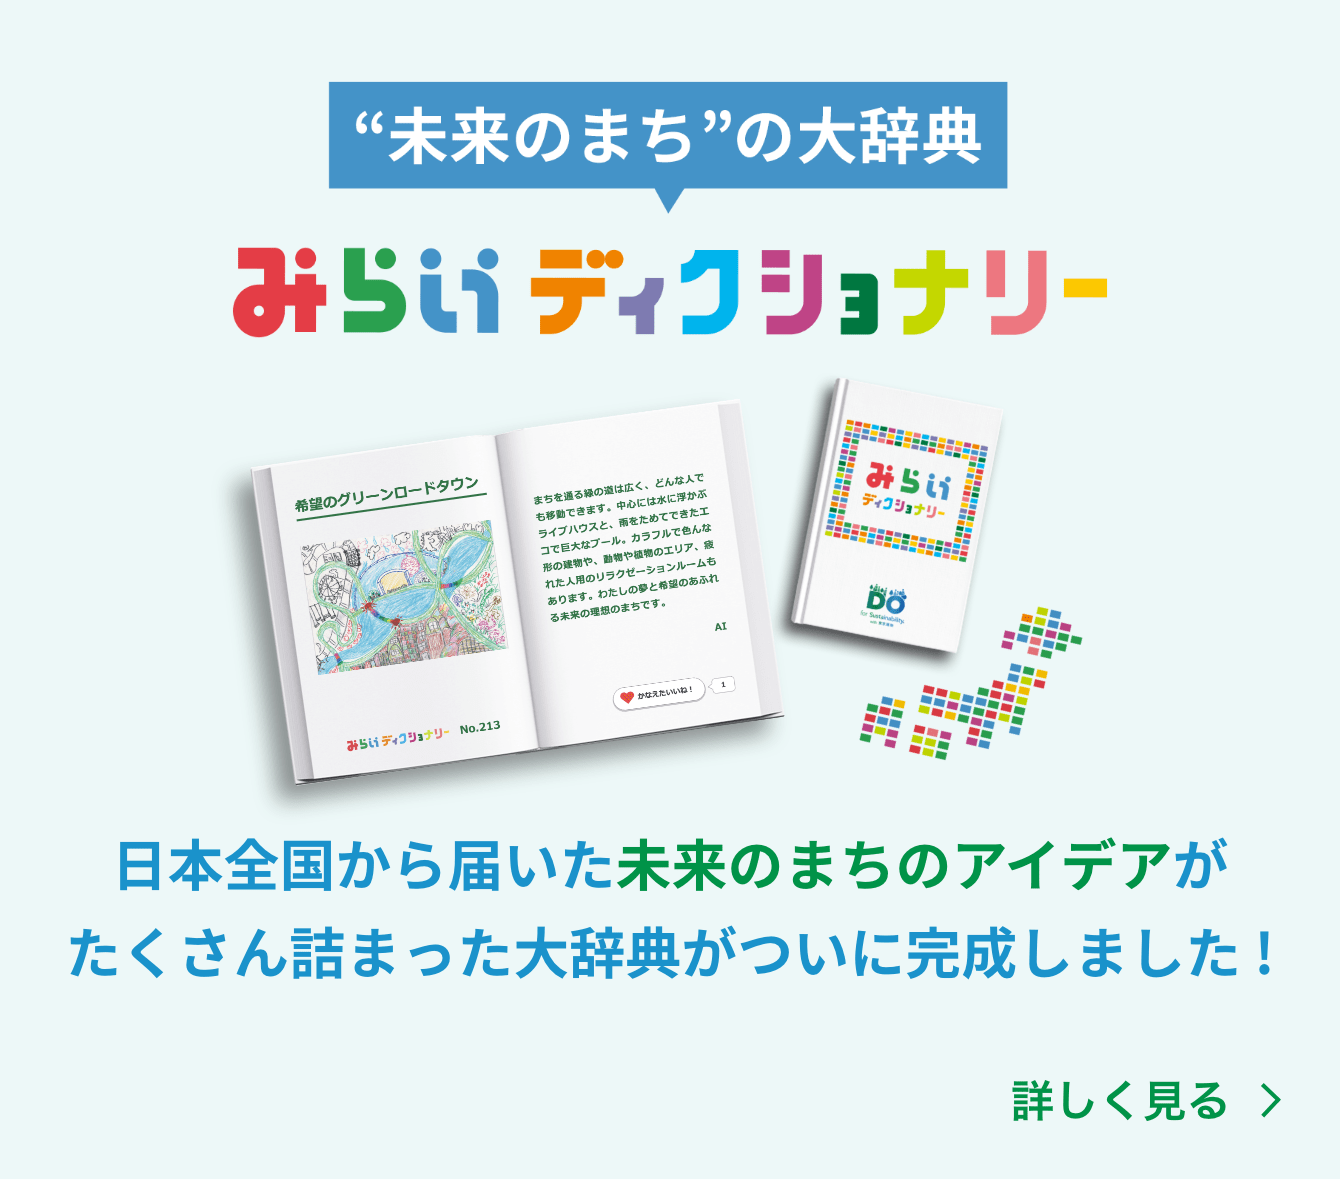 未来のまちの大辞典 みらいディクショナリー　日本全国から届いた未来のまちのアイデアがたくさん詰まった大辞典がついに完成しました！